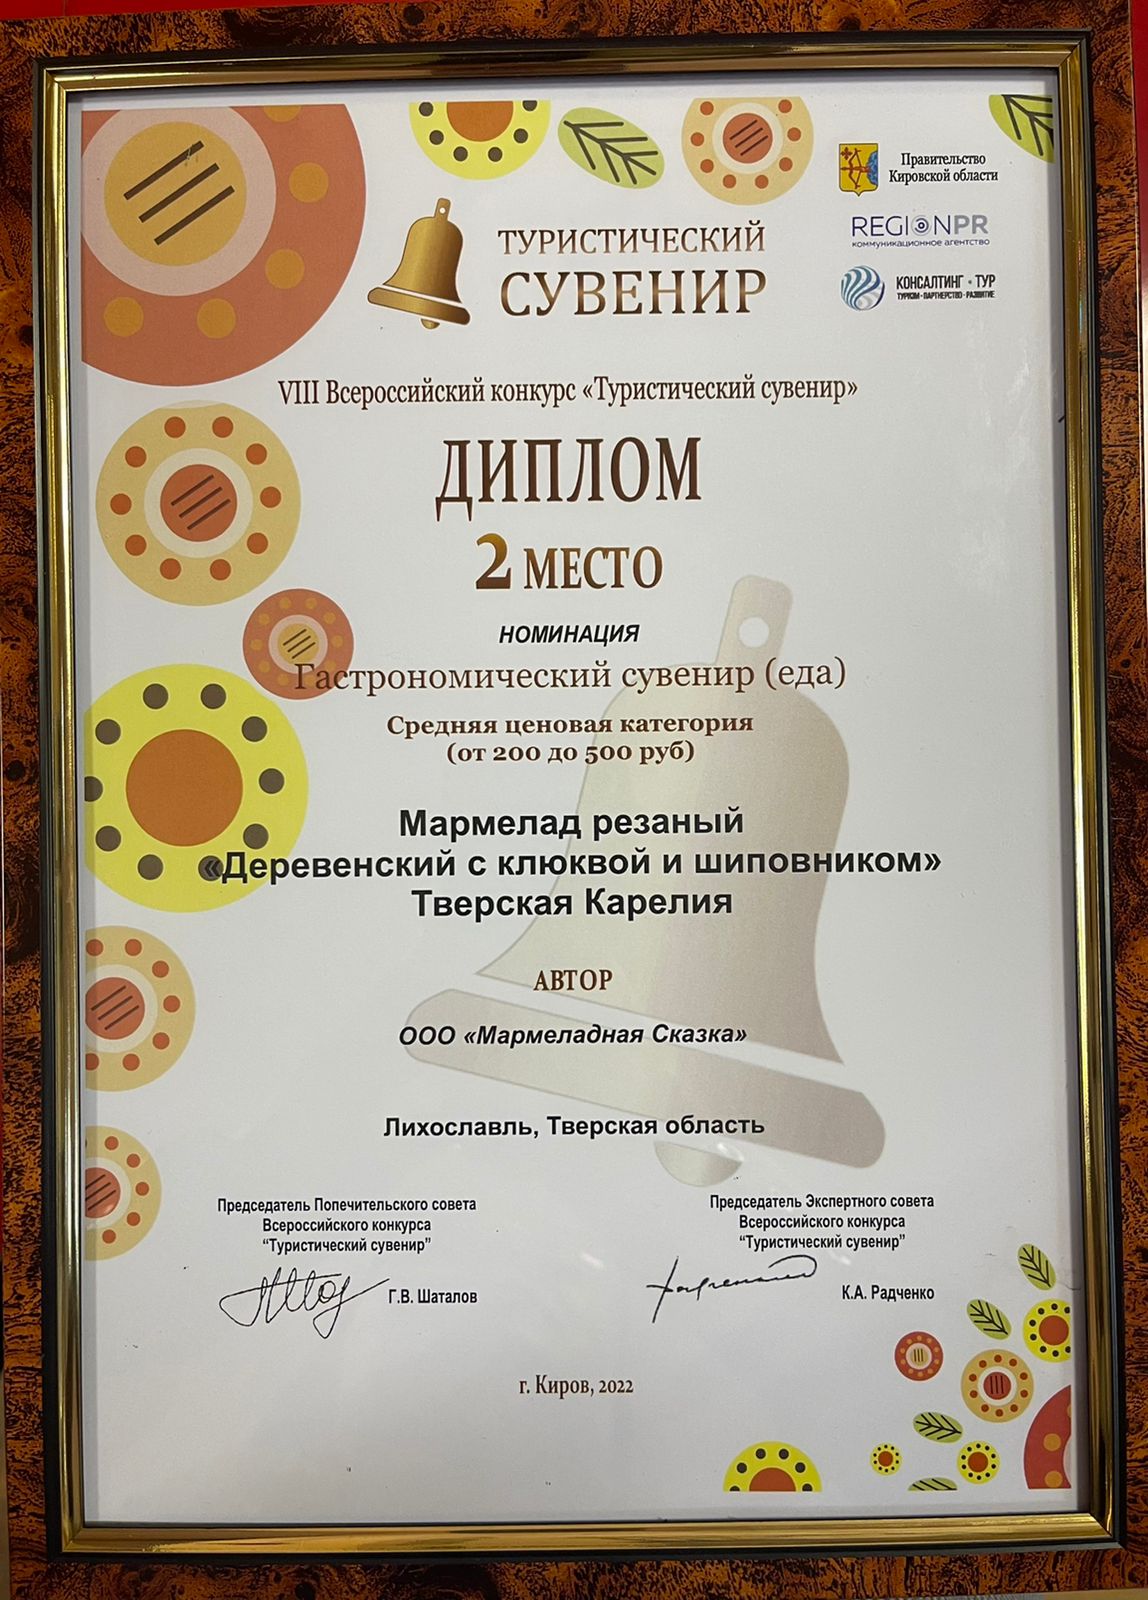 2-е место в финале Всероссийского конкурса "Туристический сувенир"!